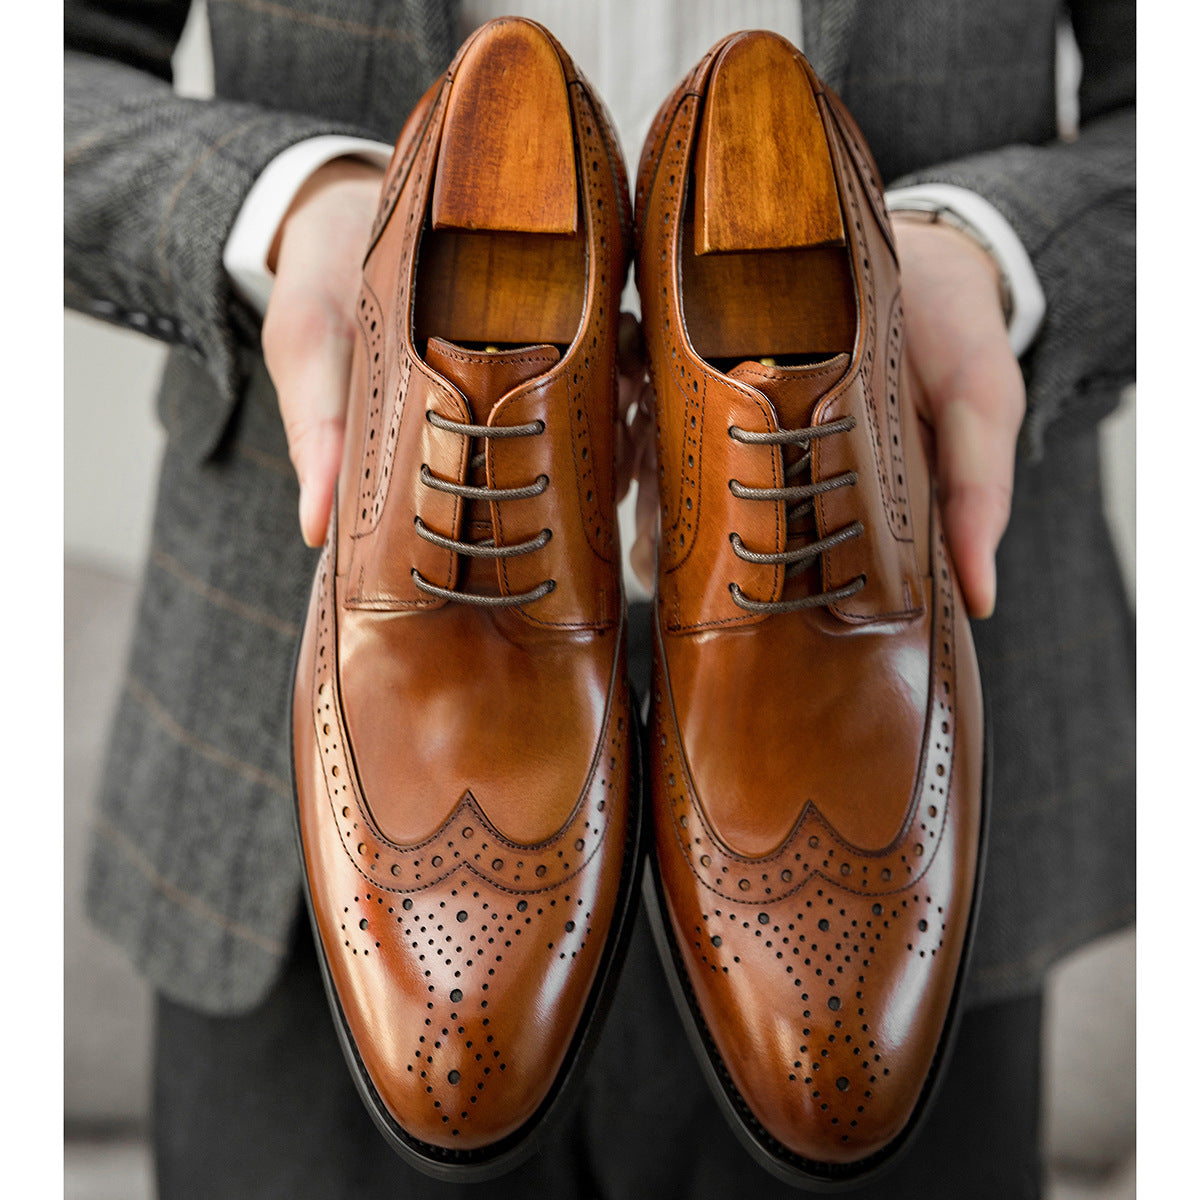 Chaussures en cuir sculpté britanniques Brogue pour hommes classiques et élégants